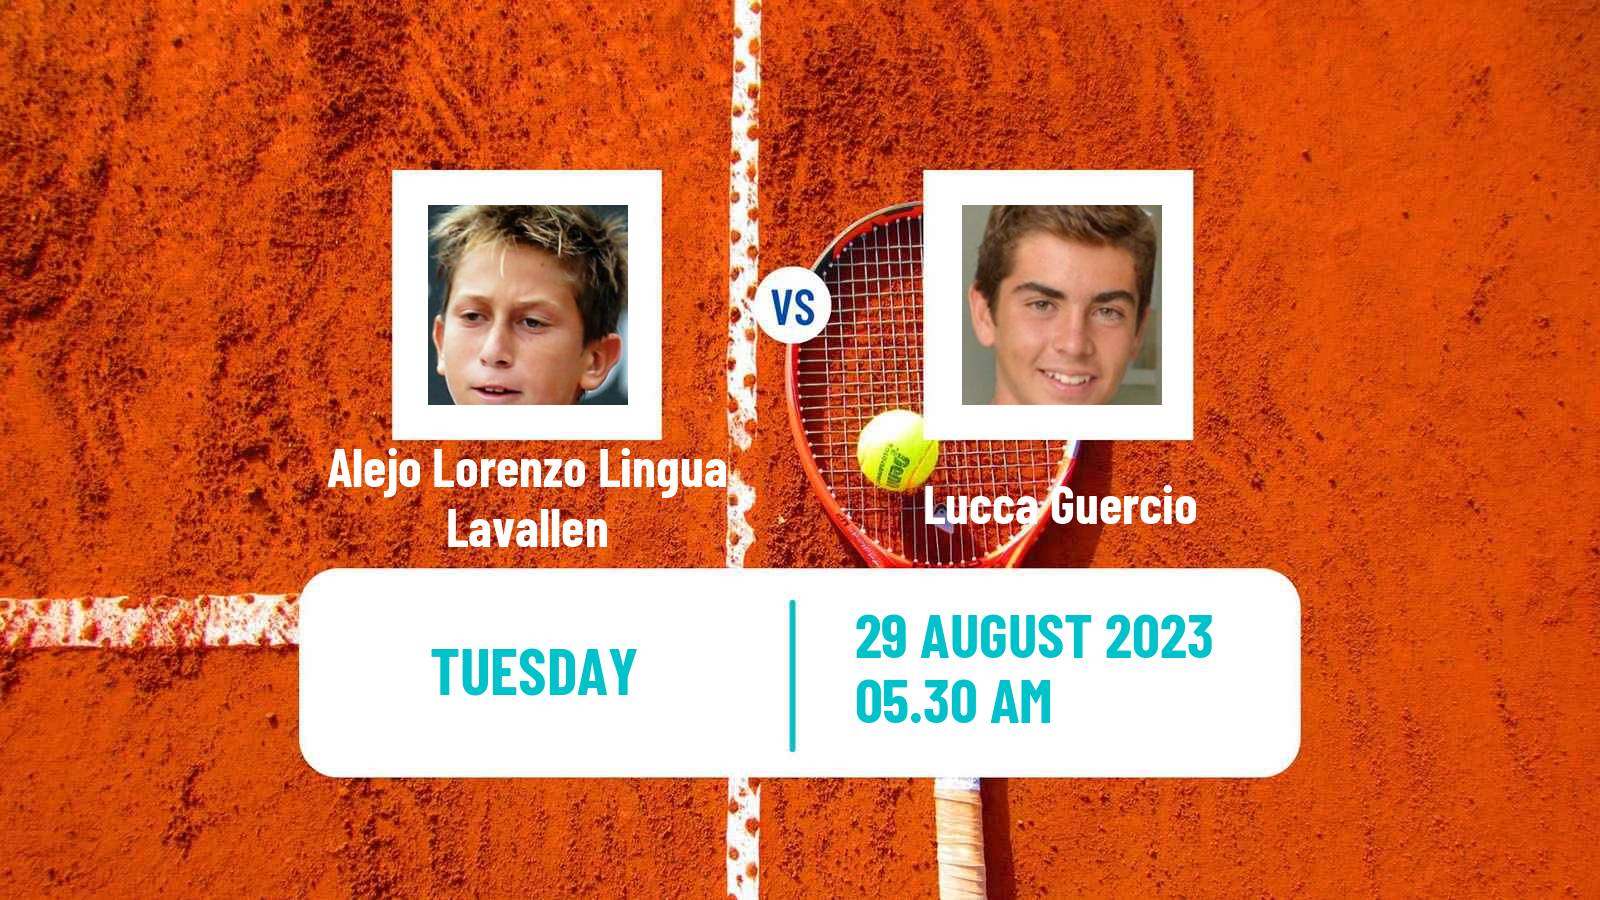 Tennis ITF M15 Buenos Aires Men Alejo Lorenzo Lingua Lavallen - Lucca Guercio